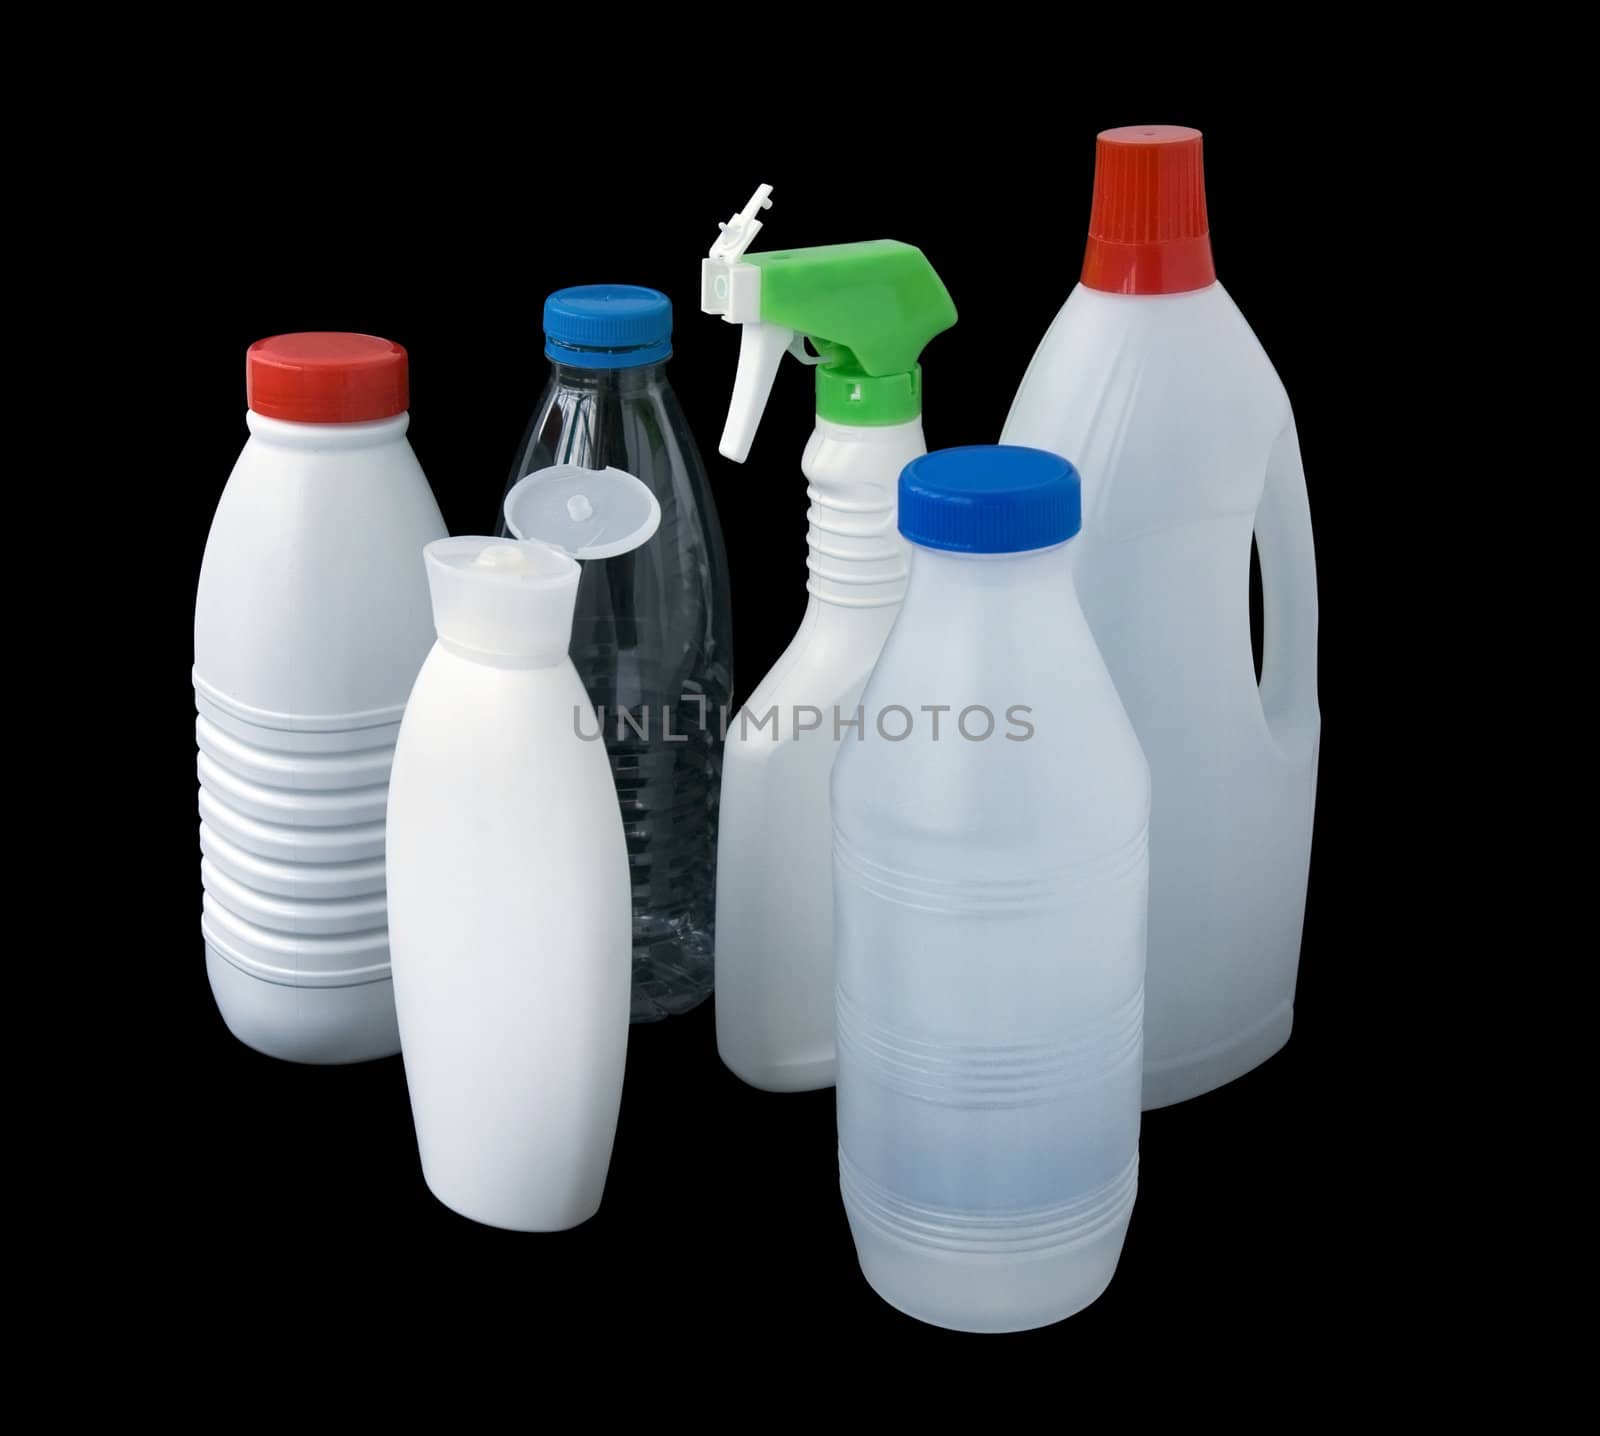 plastic bottles by daboost